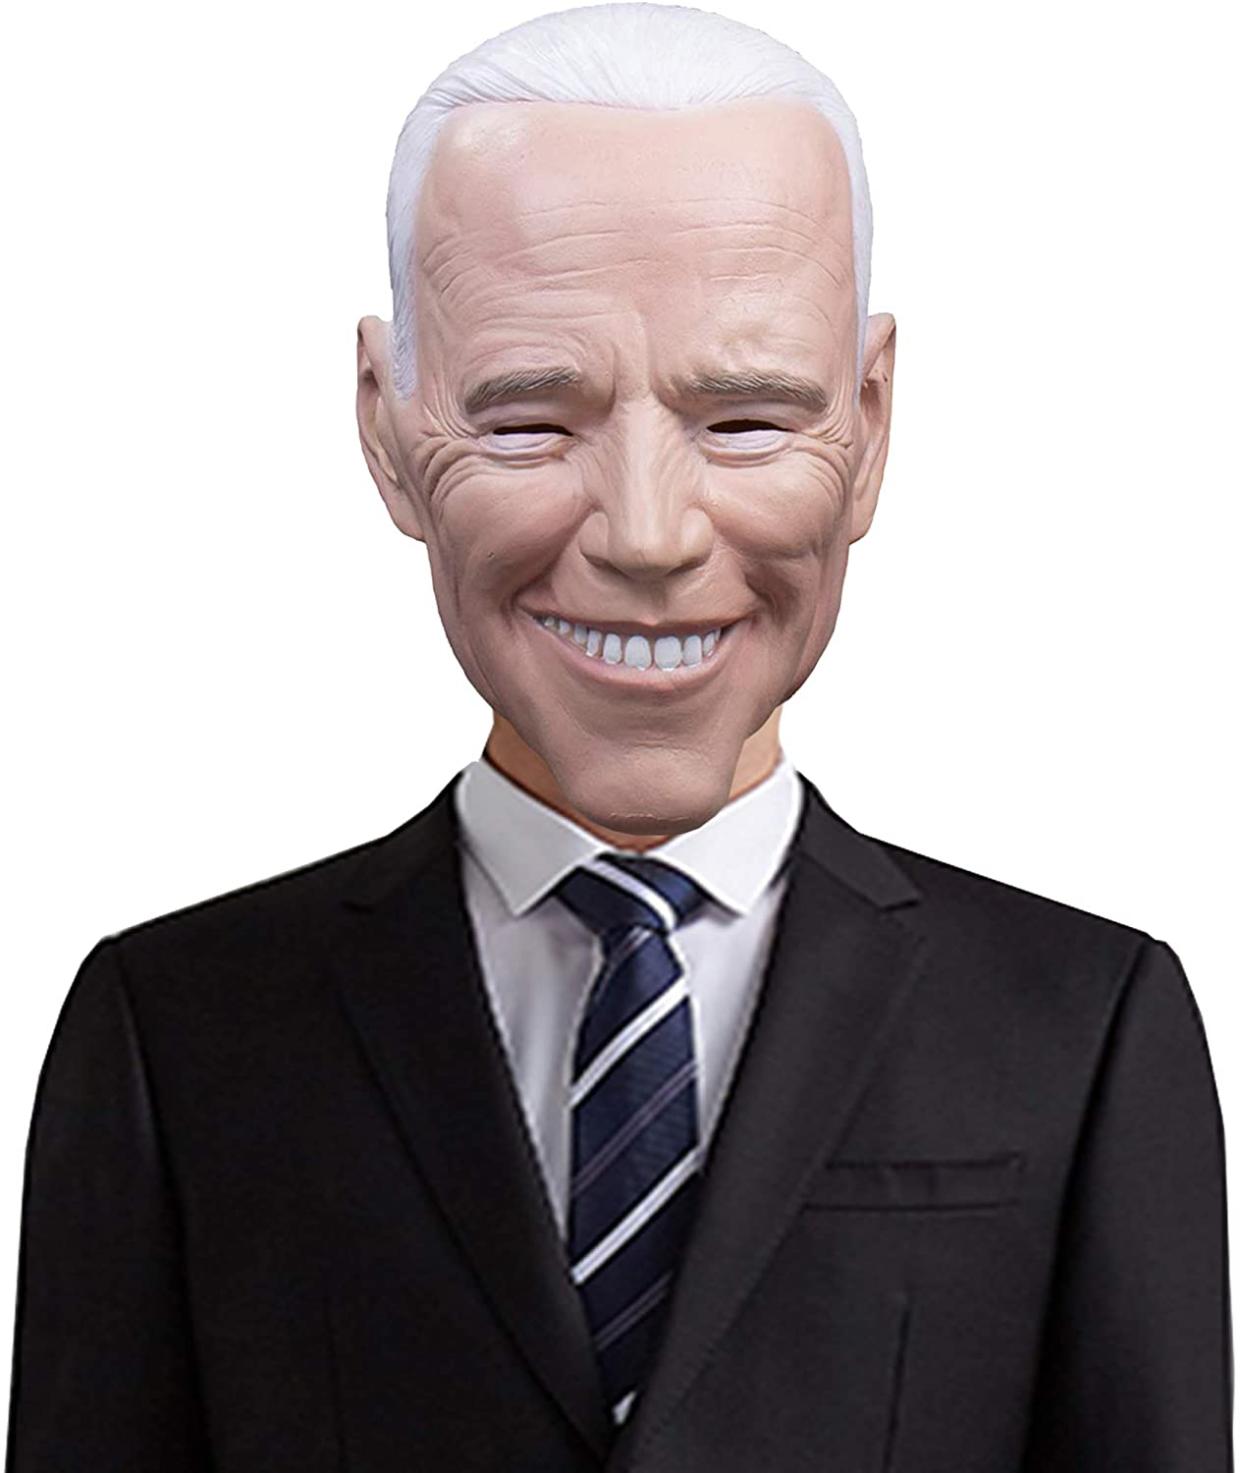 Heionia Joe Biden Mask